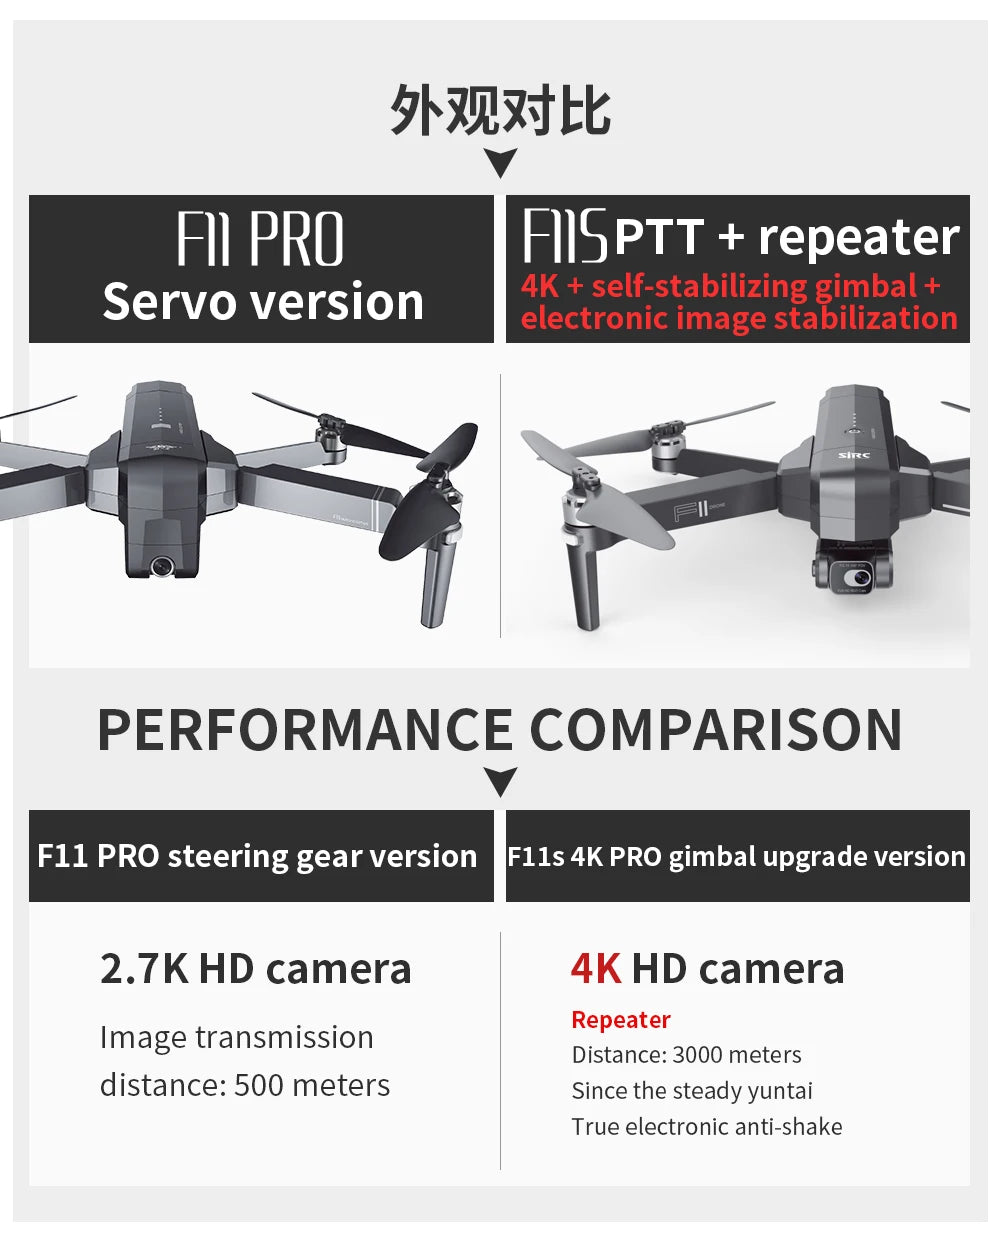 F11S PRO Drone, bk>xtEb FII PRO Fsptt repeater